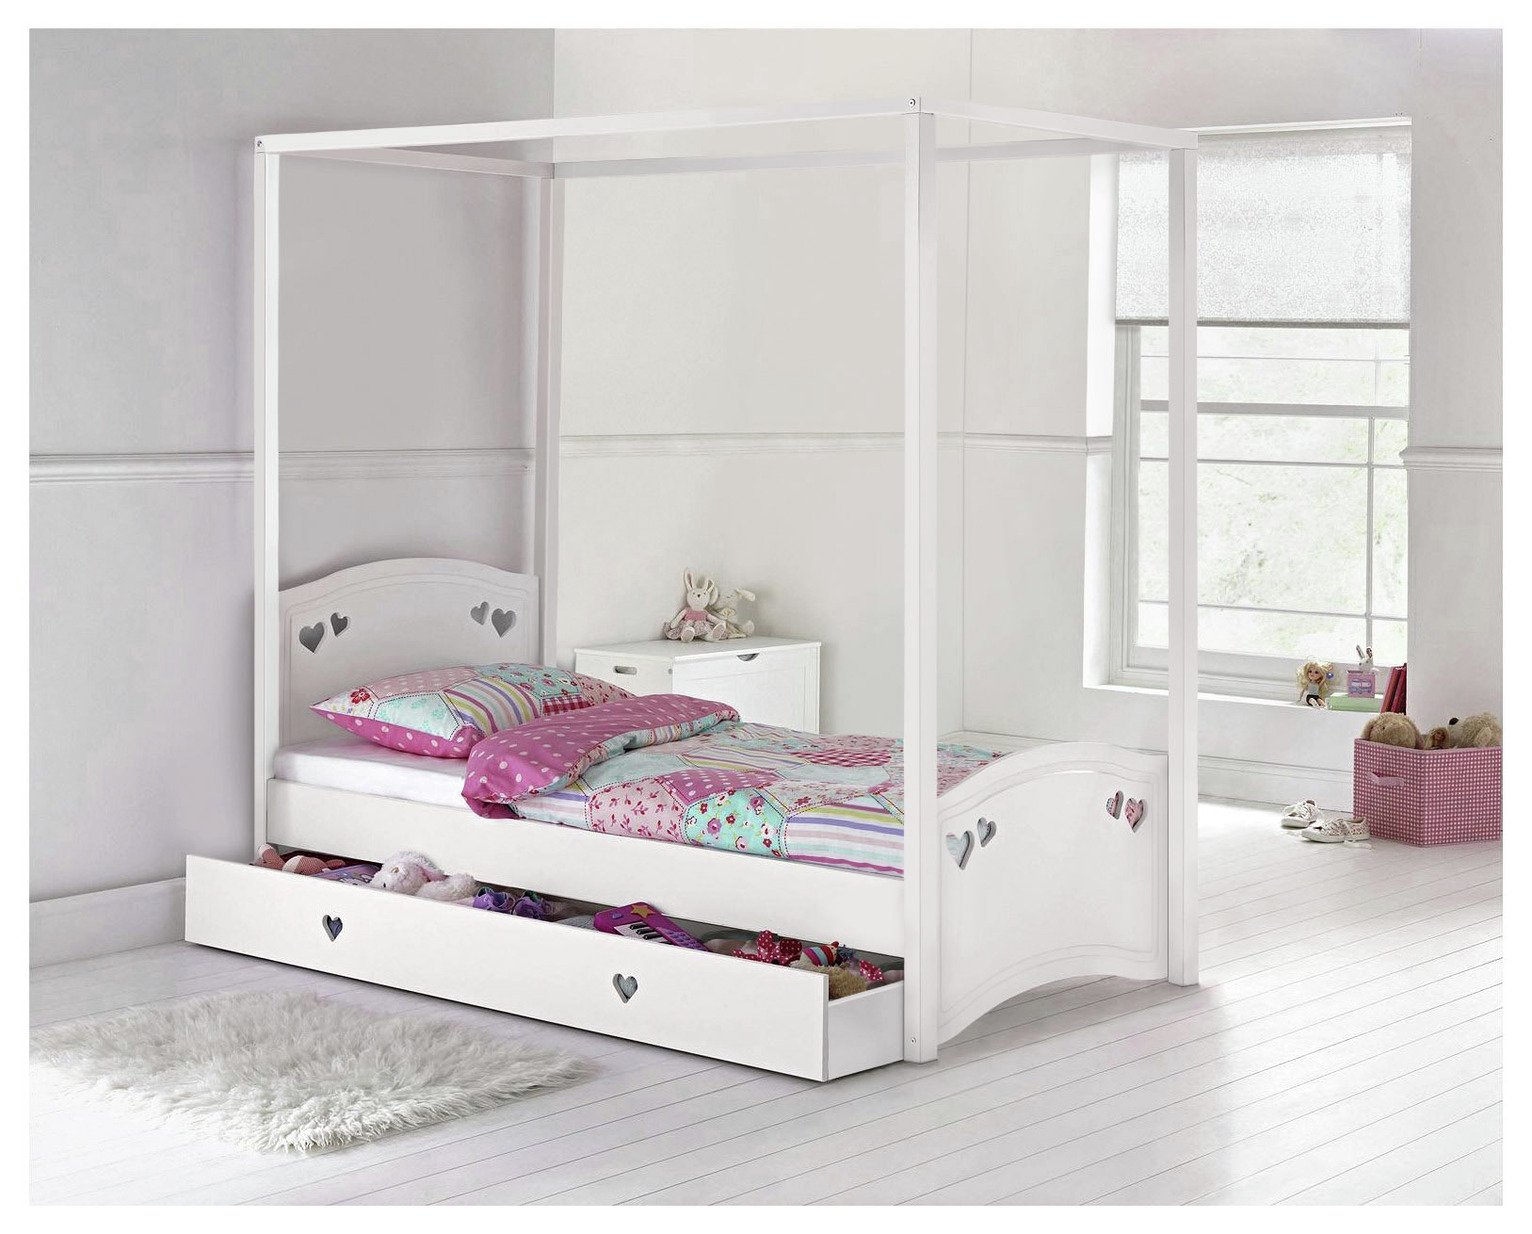 Argos Home Mia Single 4 Poster Bed Frame - White